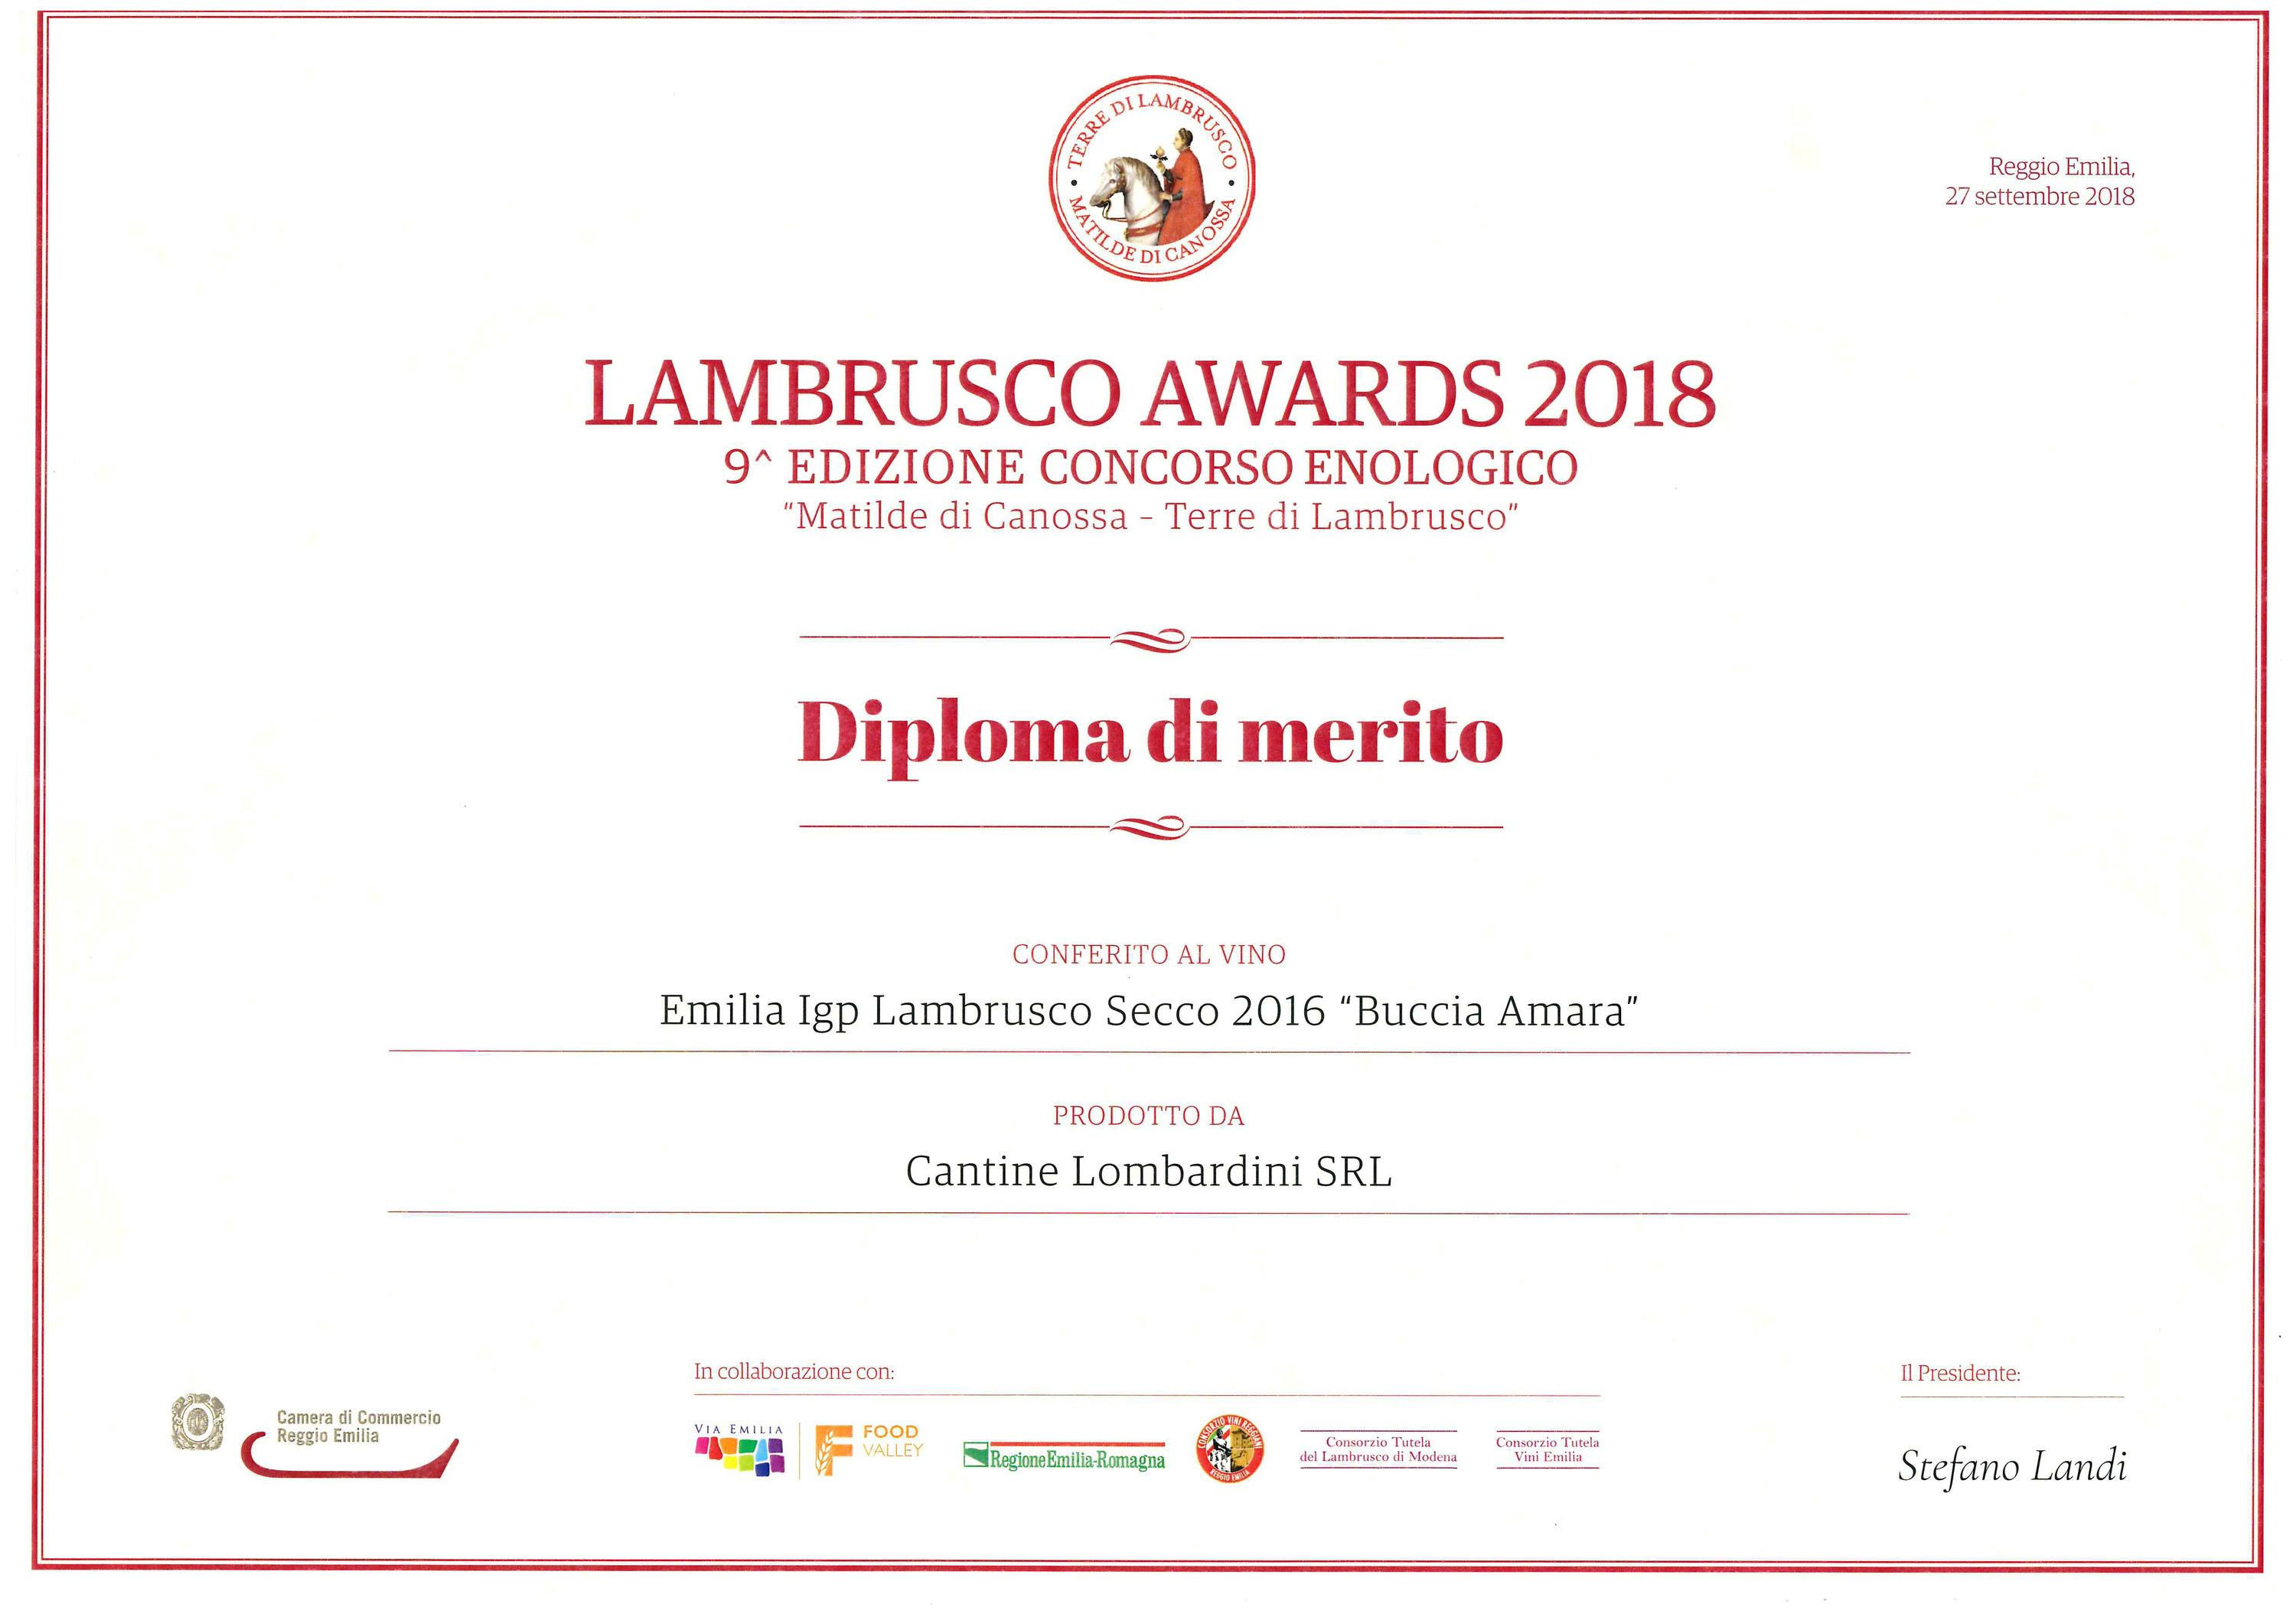 Lambrusco awards 2018_2.jpg